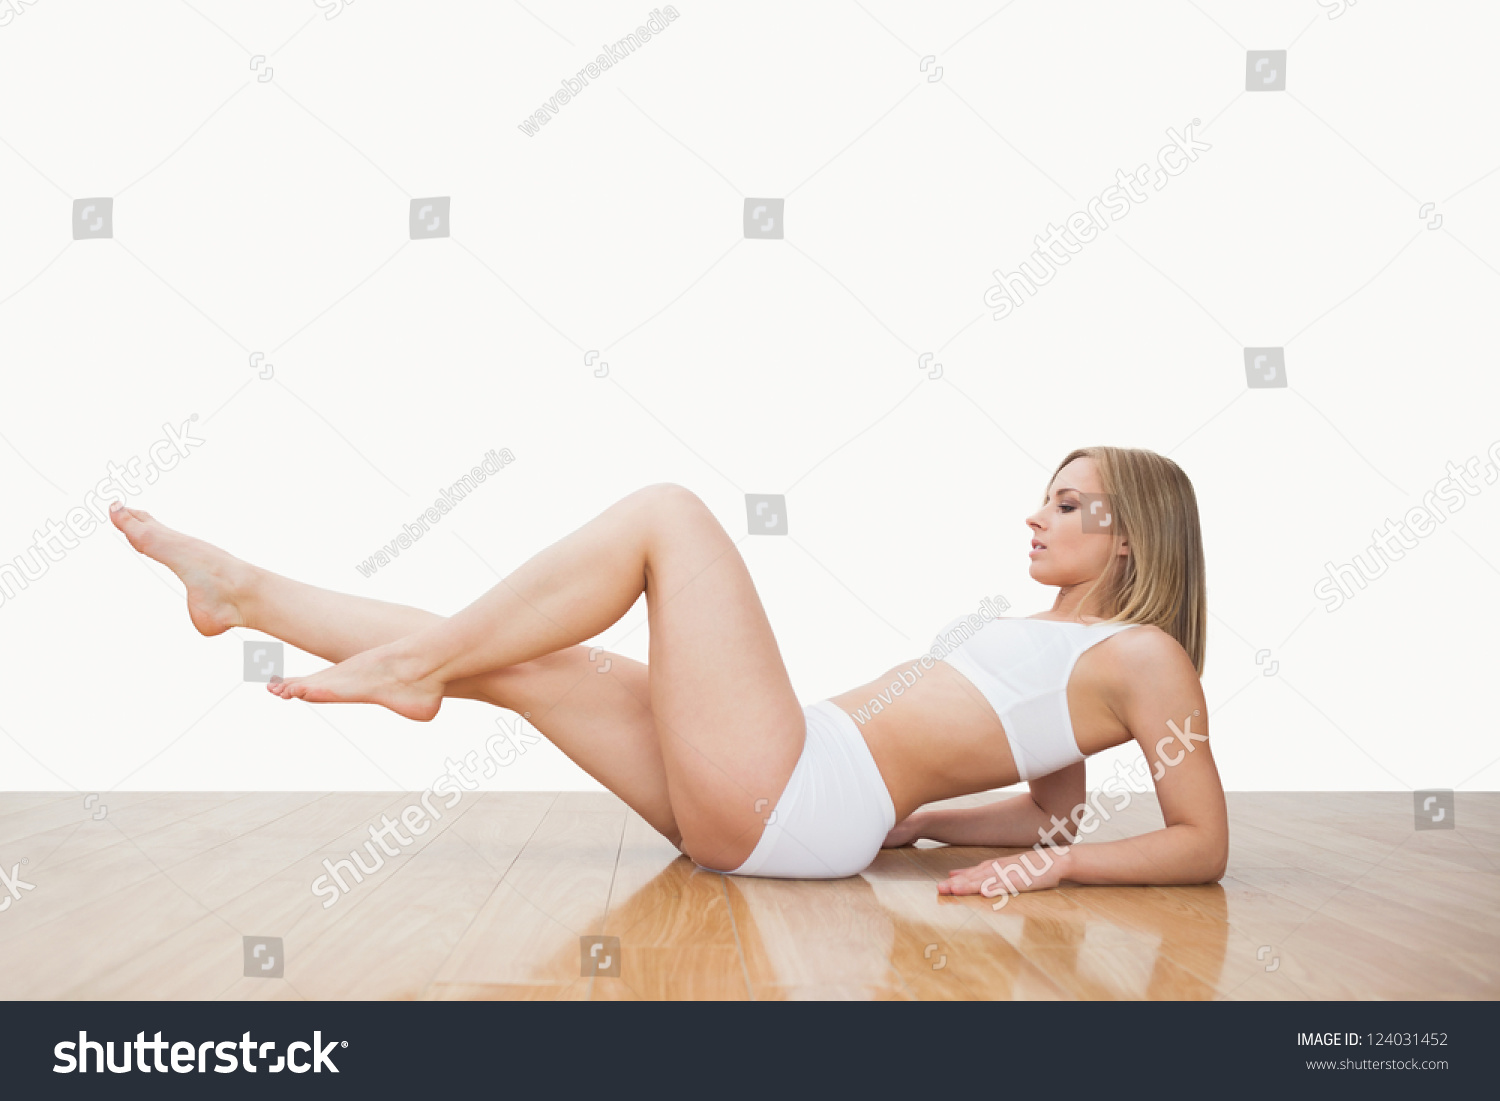 Сидя на полу девушка поднимает ногу фото